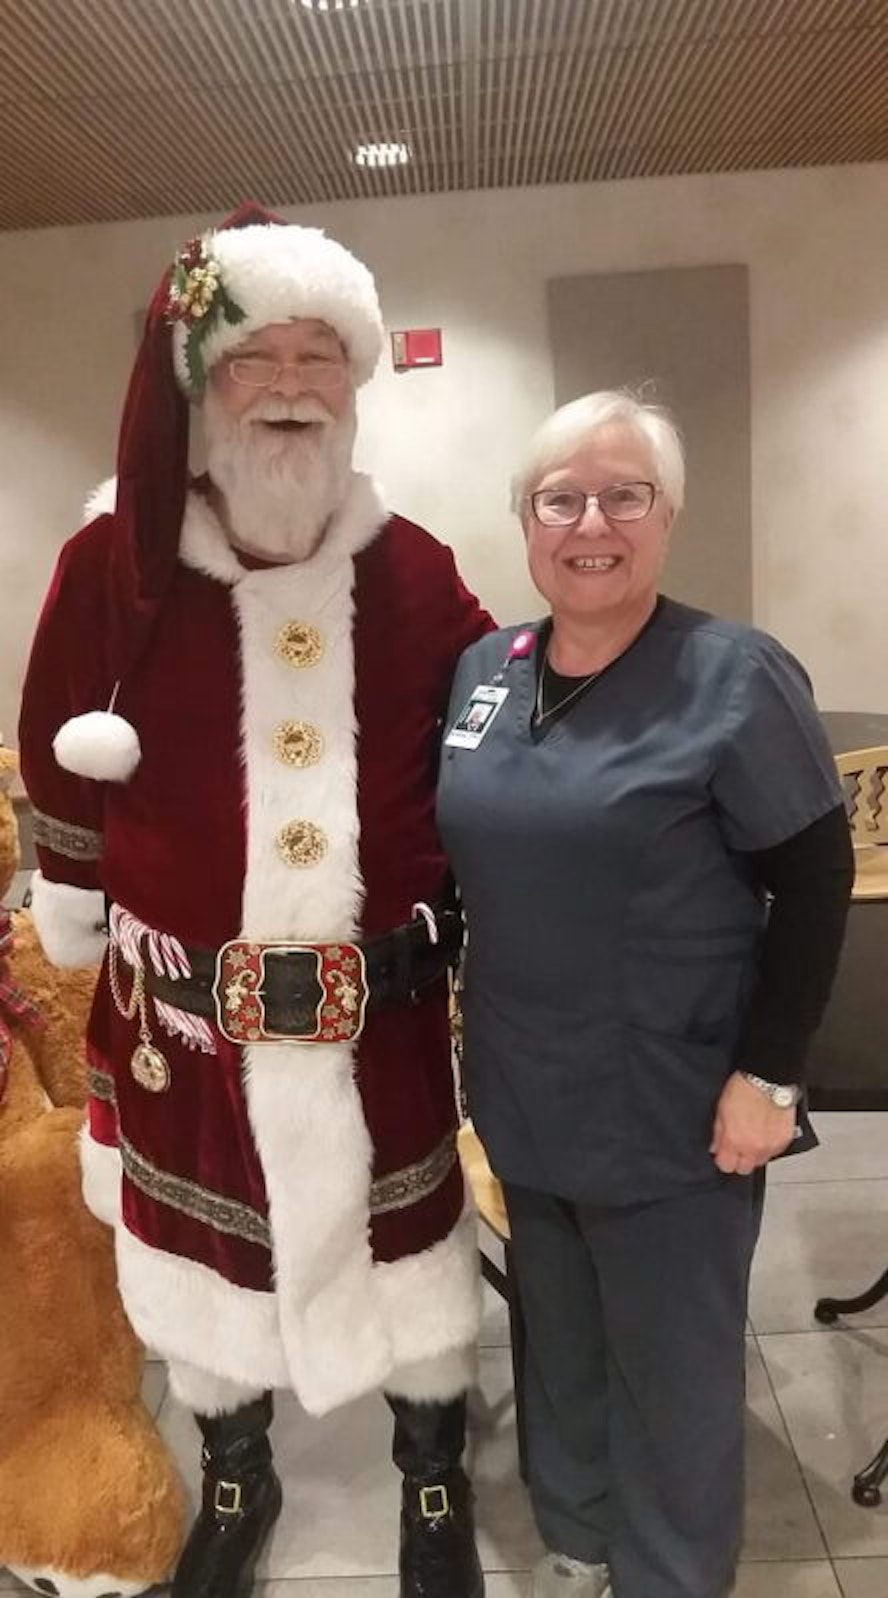 Besuch von Santa Claus bekam Andrea Evans in der US-Klinik, in der sie als Pharmazeutisch-Technische Assistentin arbeitet.